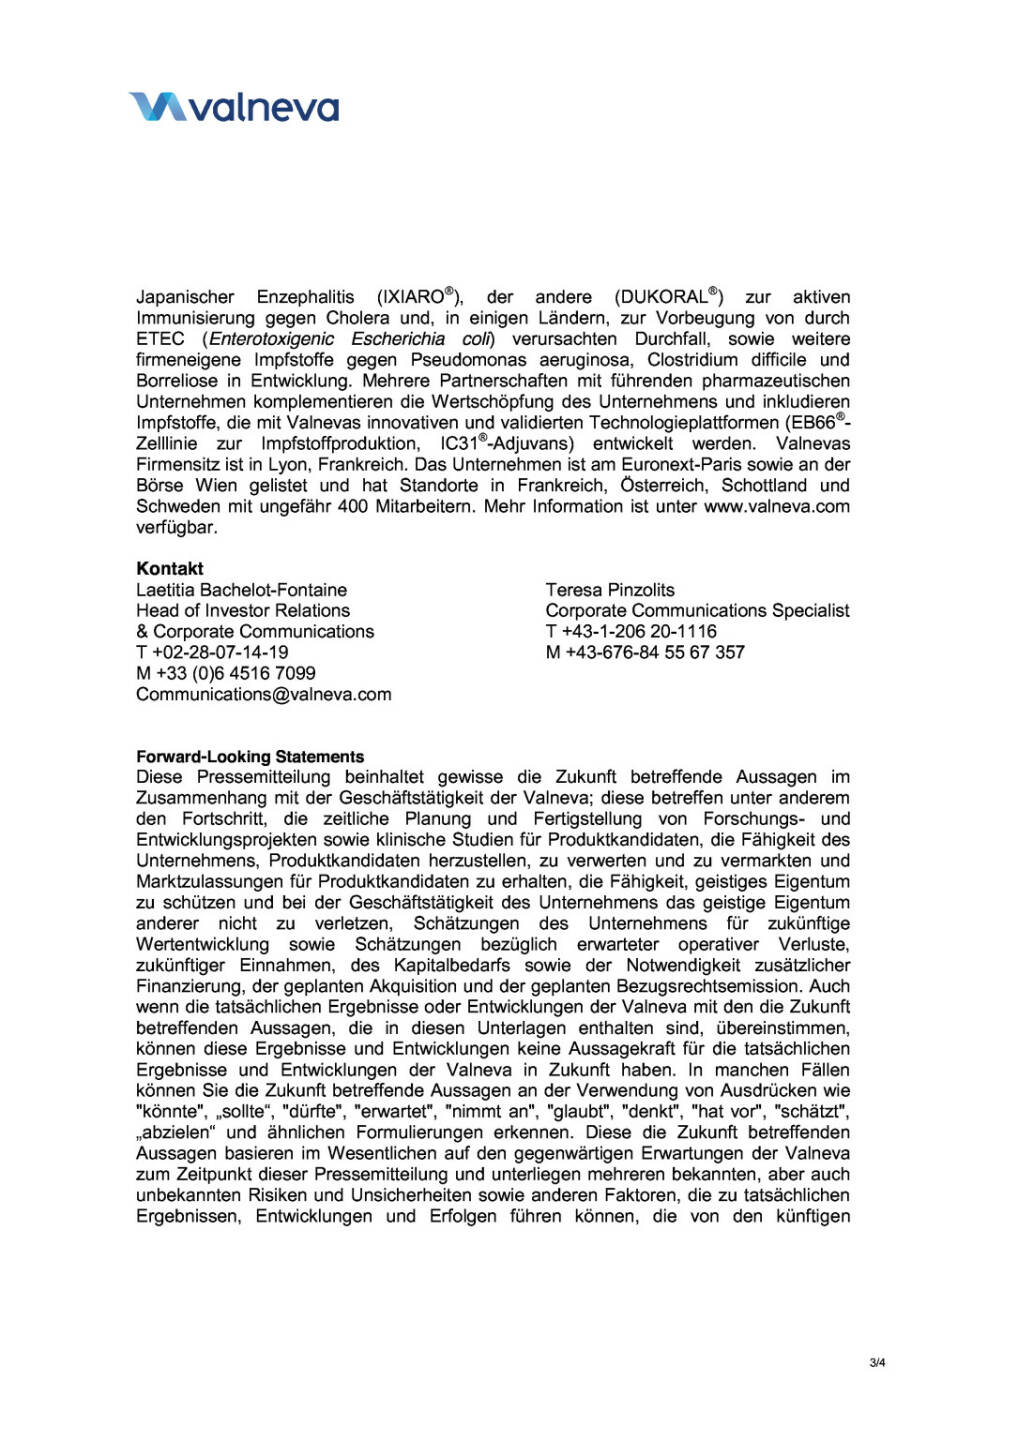 Valneva gibt neue Vereinbarungen bekannt, Seite 3/4, komplettes Dokument unter http://boerse-social.com/static/uploads/file_321_valneva_gibt_neue_vereinbarungen_bekannt.pdf